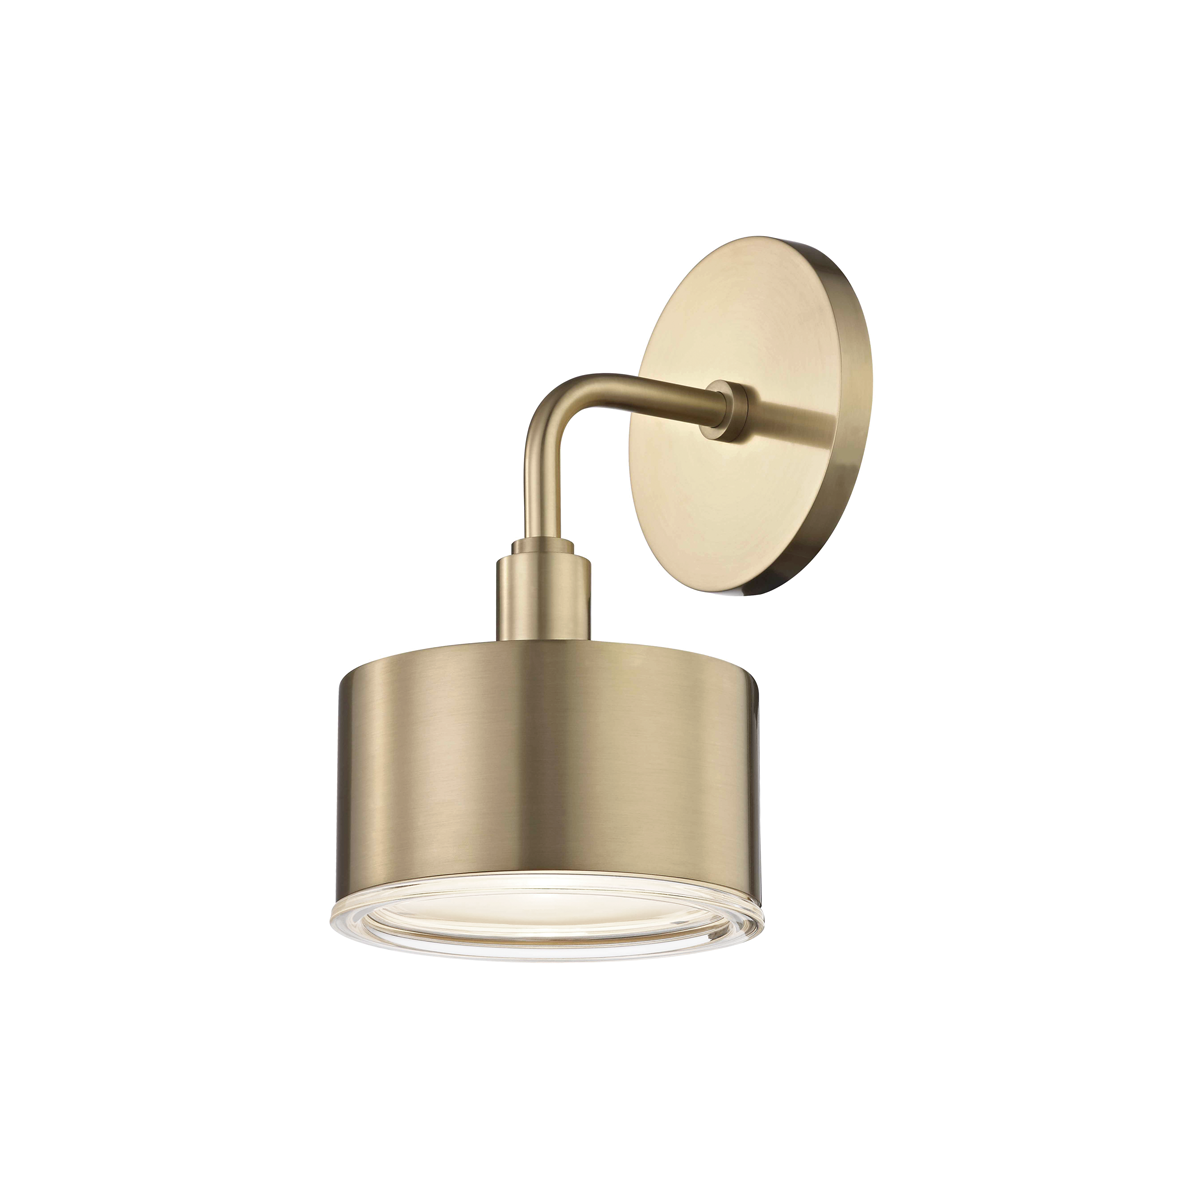 Hudson Valley Lighting Nora 1 Light Sconces H159101 Wall Light Fixtures Mitzi Aged Brass  